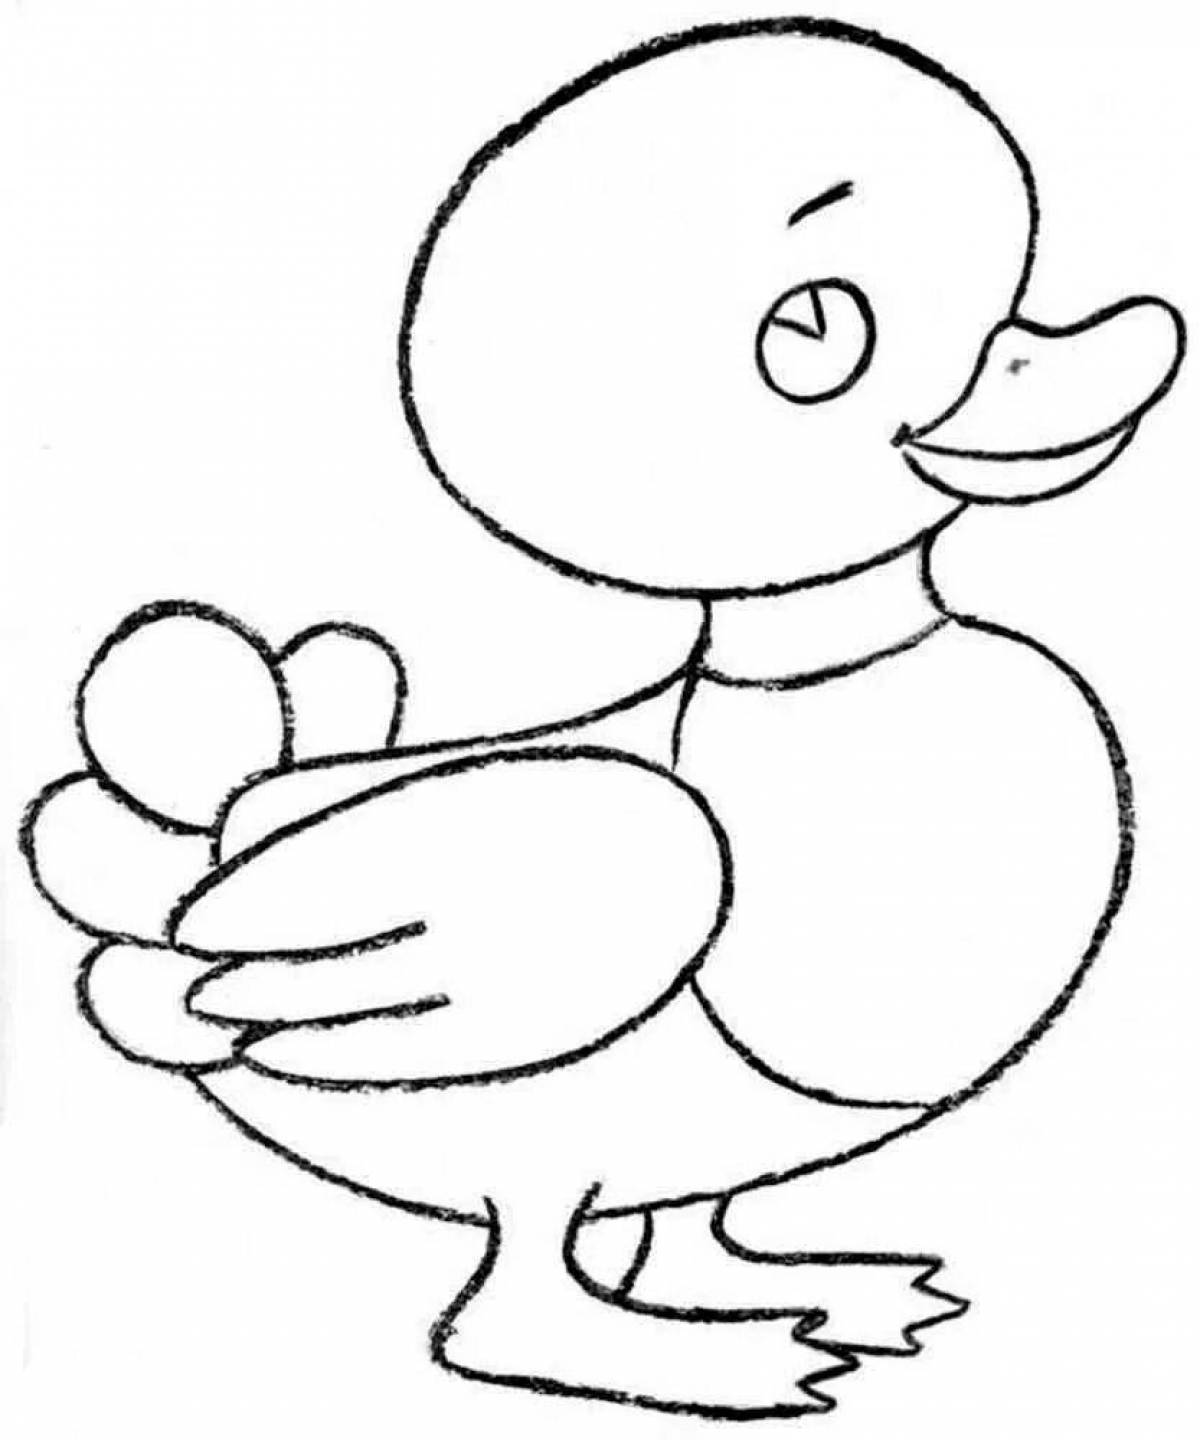 Увлекательная раскраска утка для детей 3-4 лет